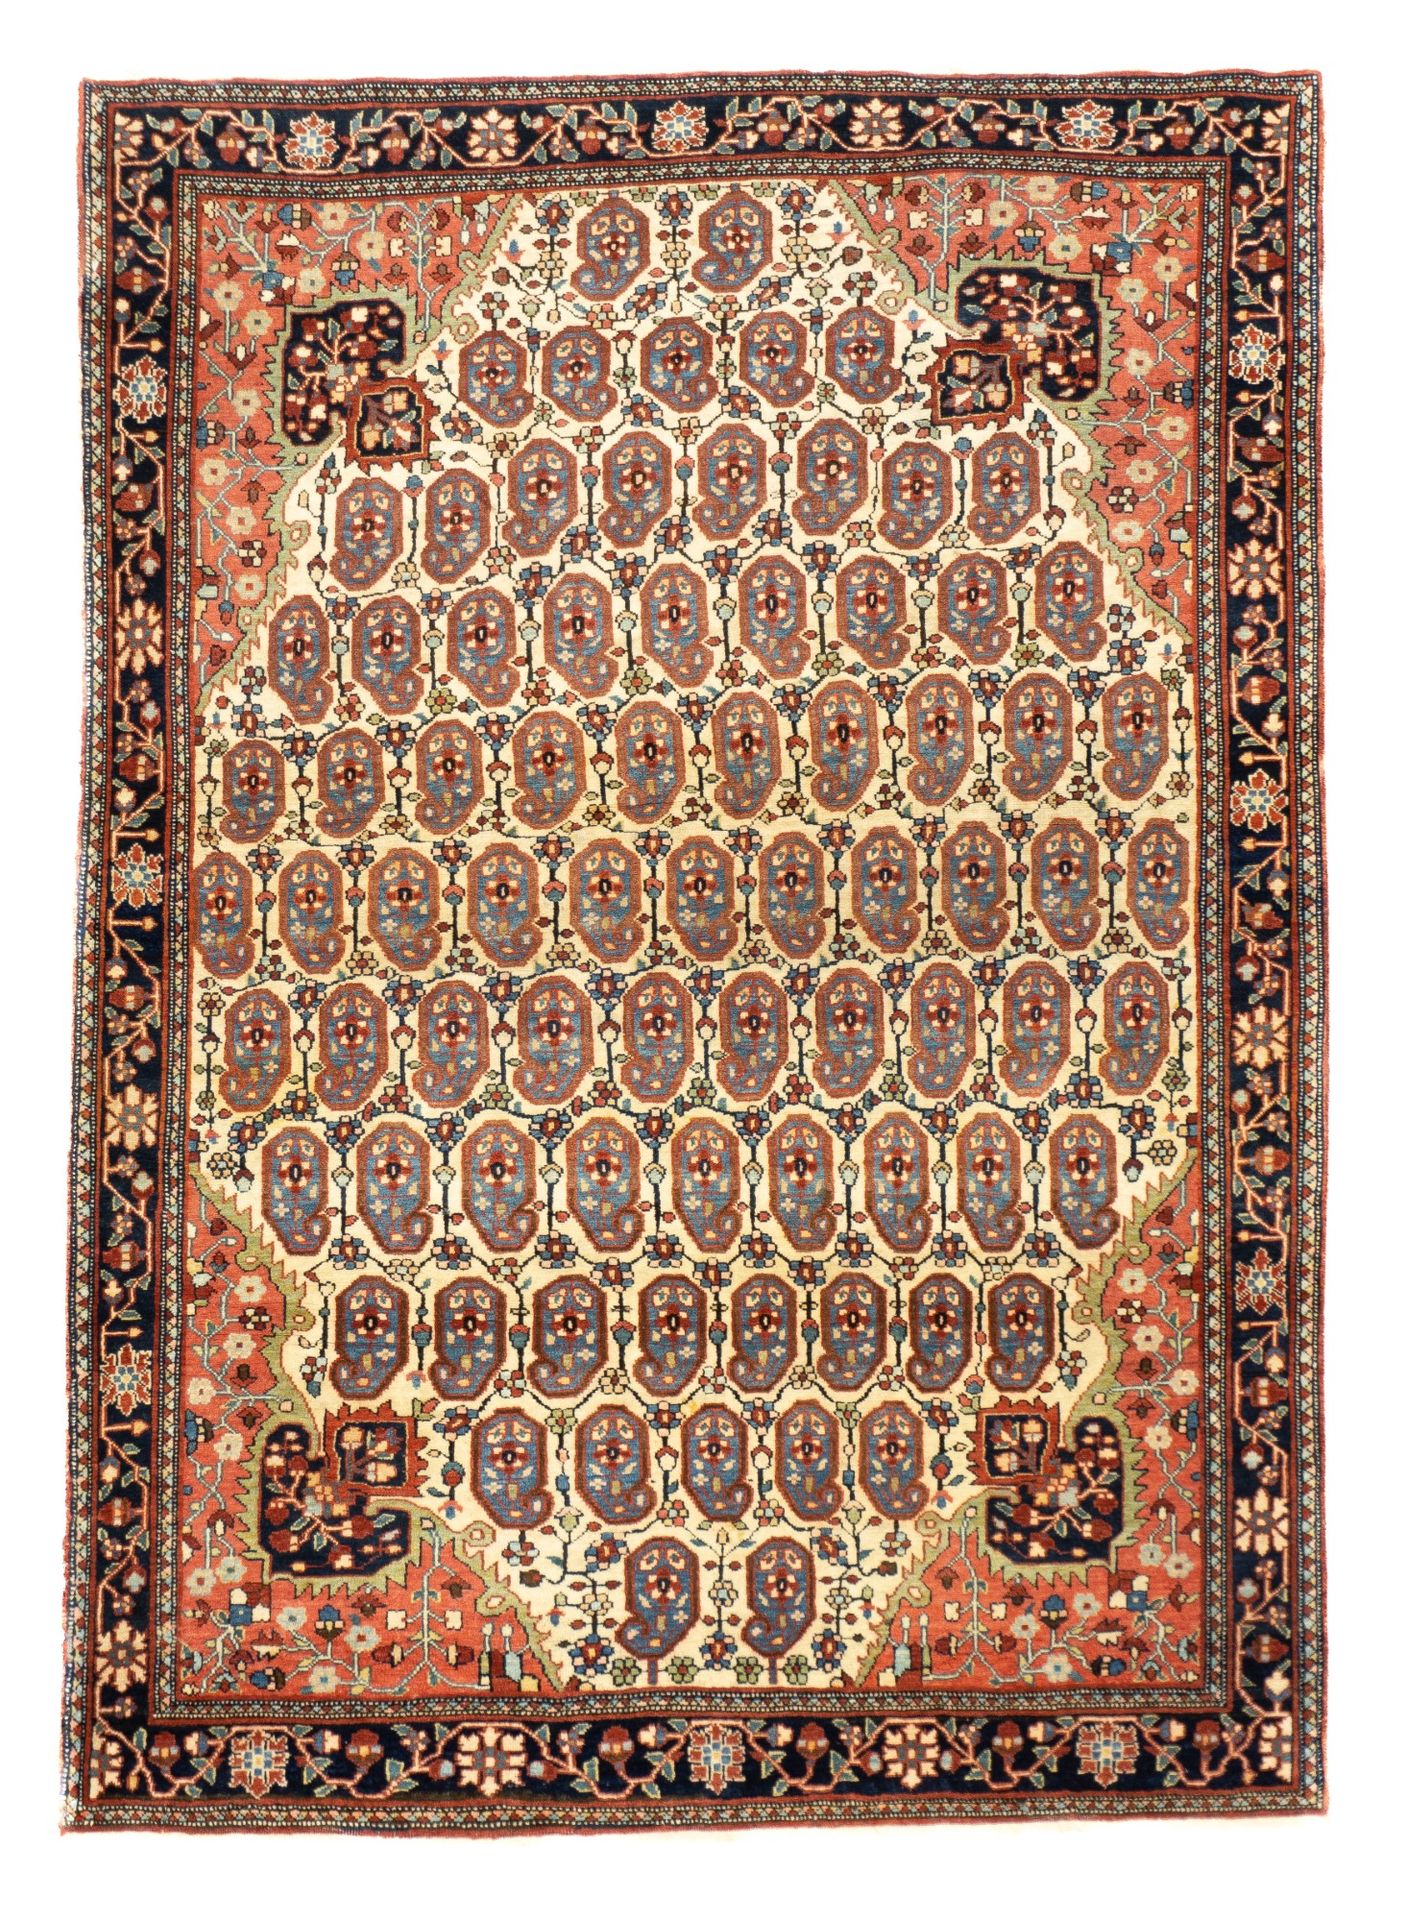 Null 古董法拉汉萨鲁克地毯，3'8" x 5' ( 1.12 x 1.52 M )